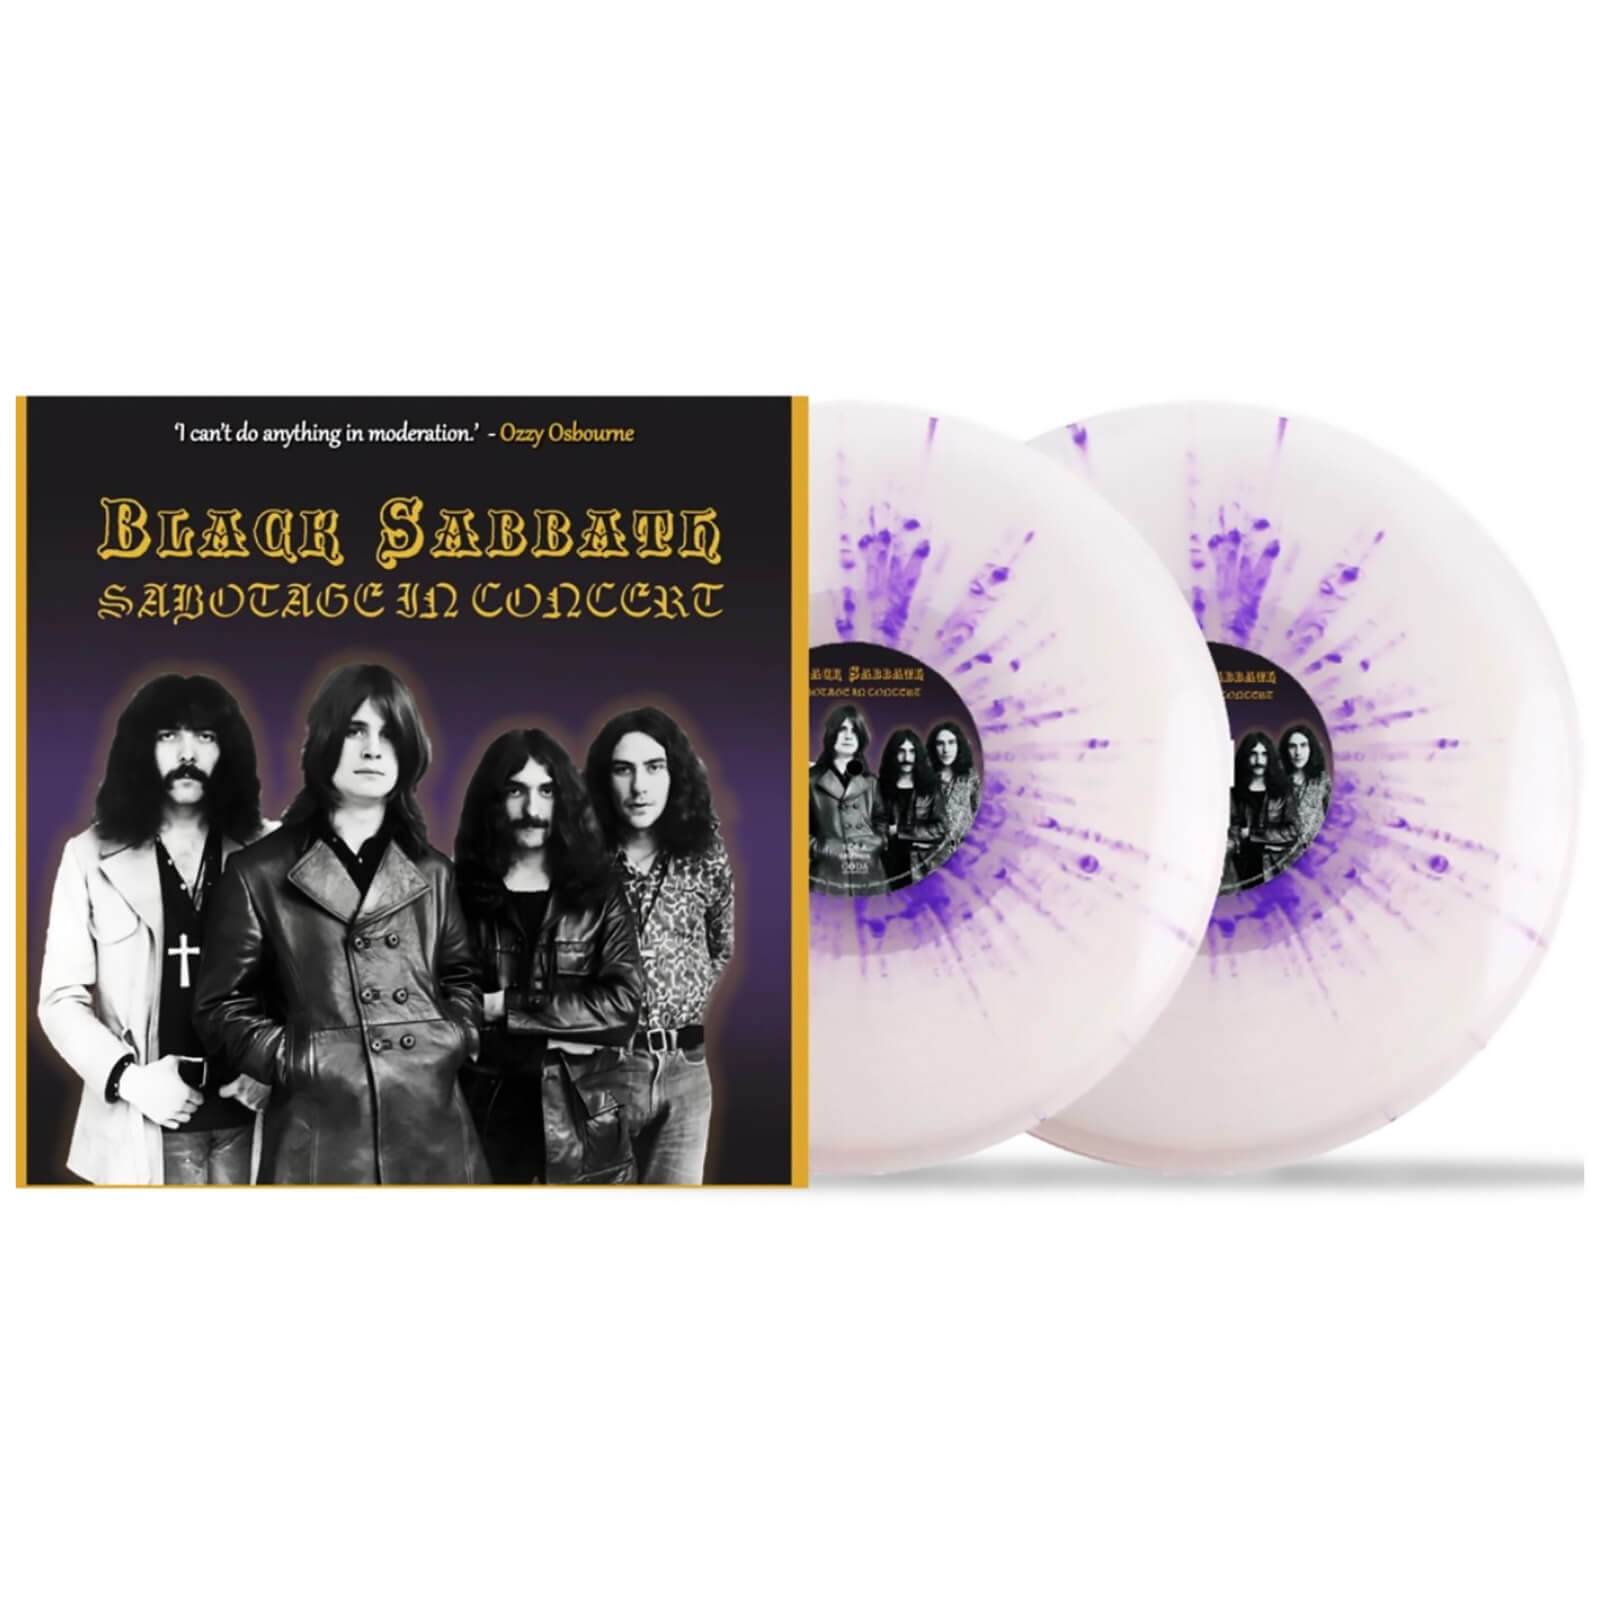 Black Sabbath - Sabotage In Concert (Splatter Vinyl) 2x 10